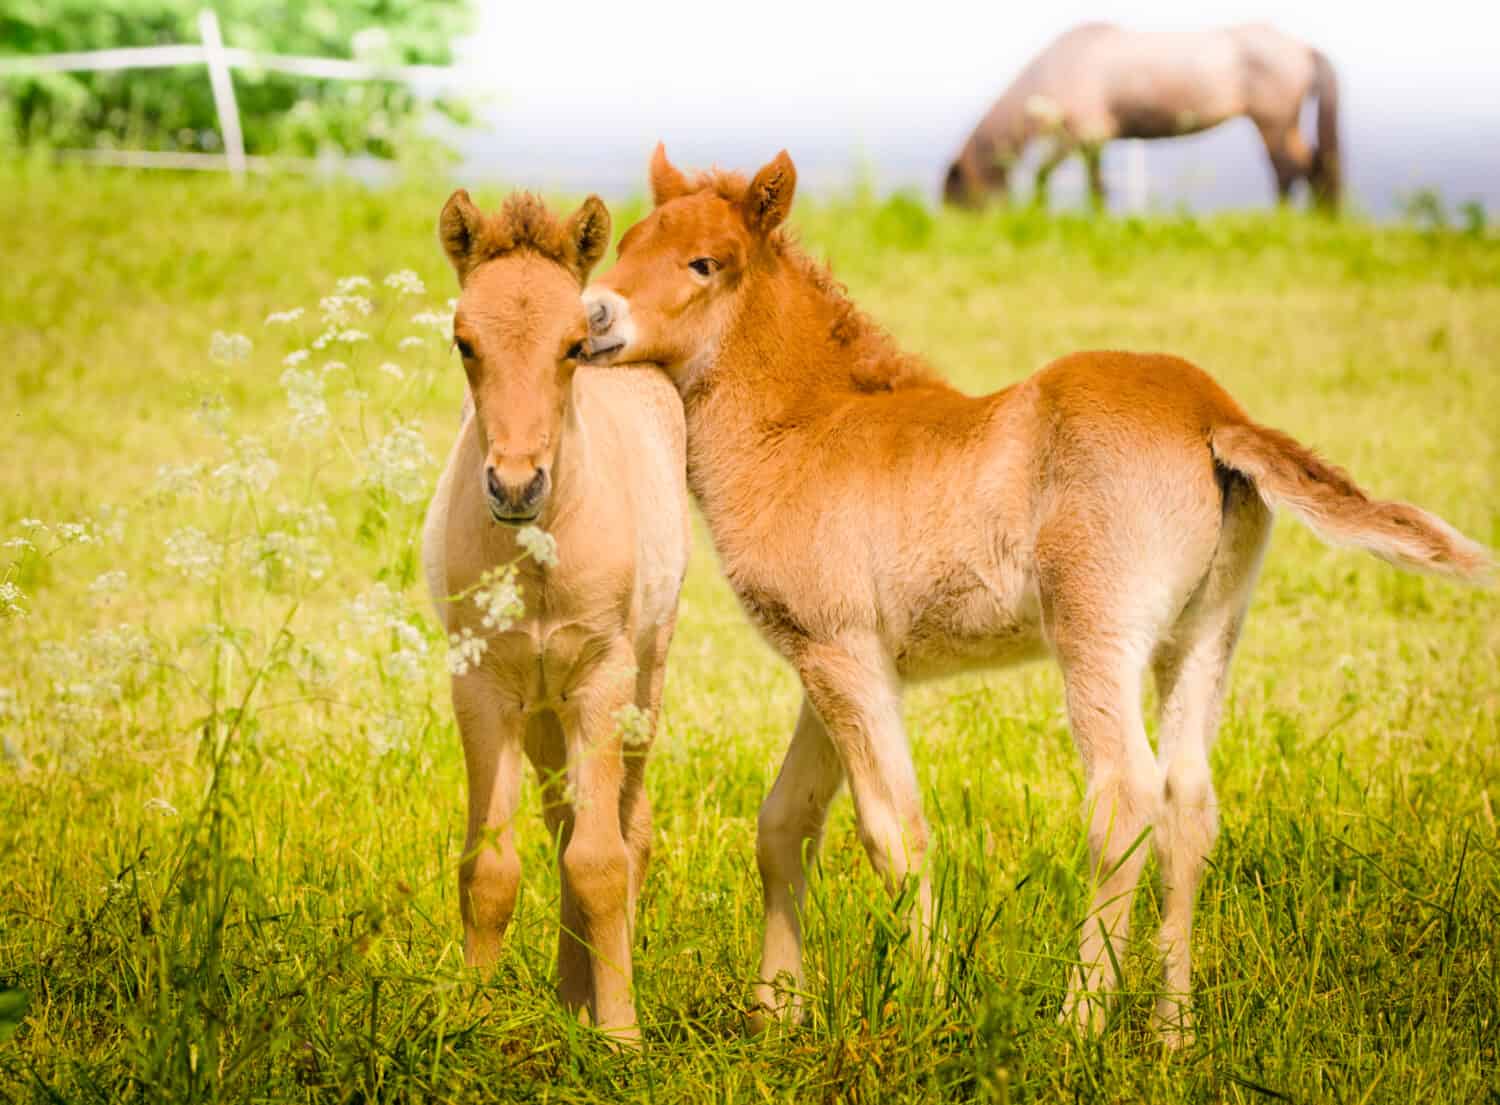 Cute little foal in the meadow